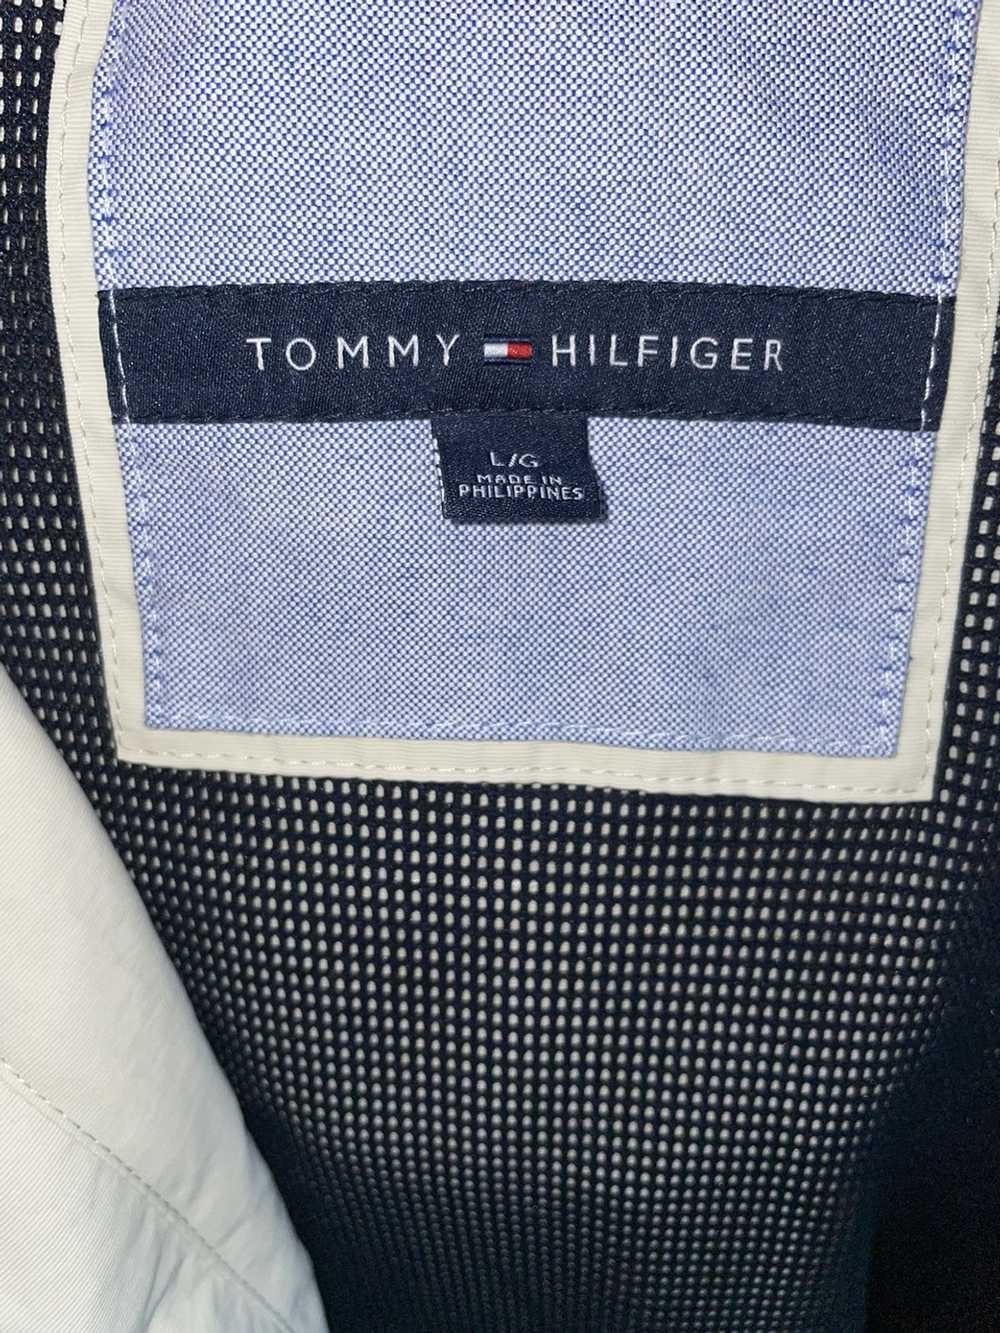 Tommy Hilfiger Tommy Hilfiger light jacket - image 5